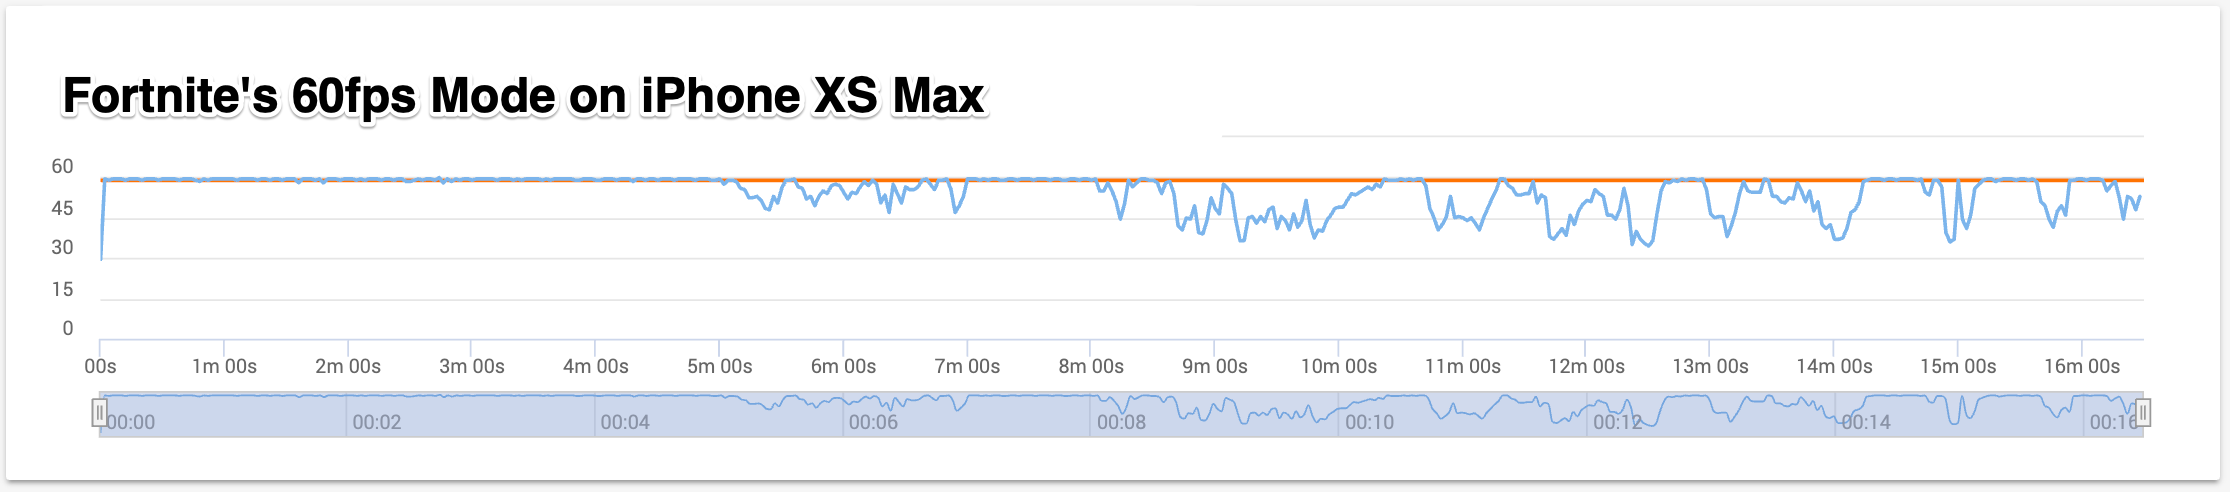 iPhone-XS-Max-Fortnite-FPS-Chart